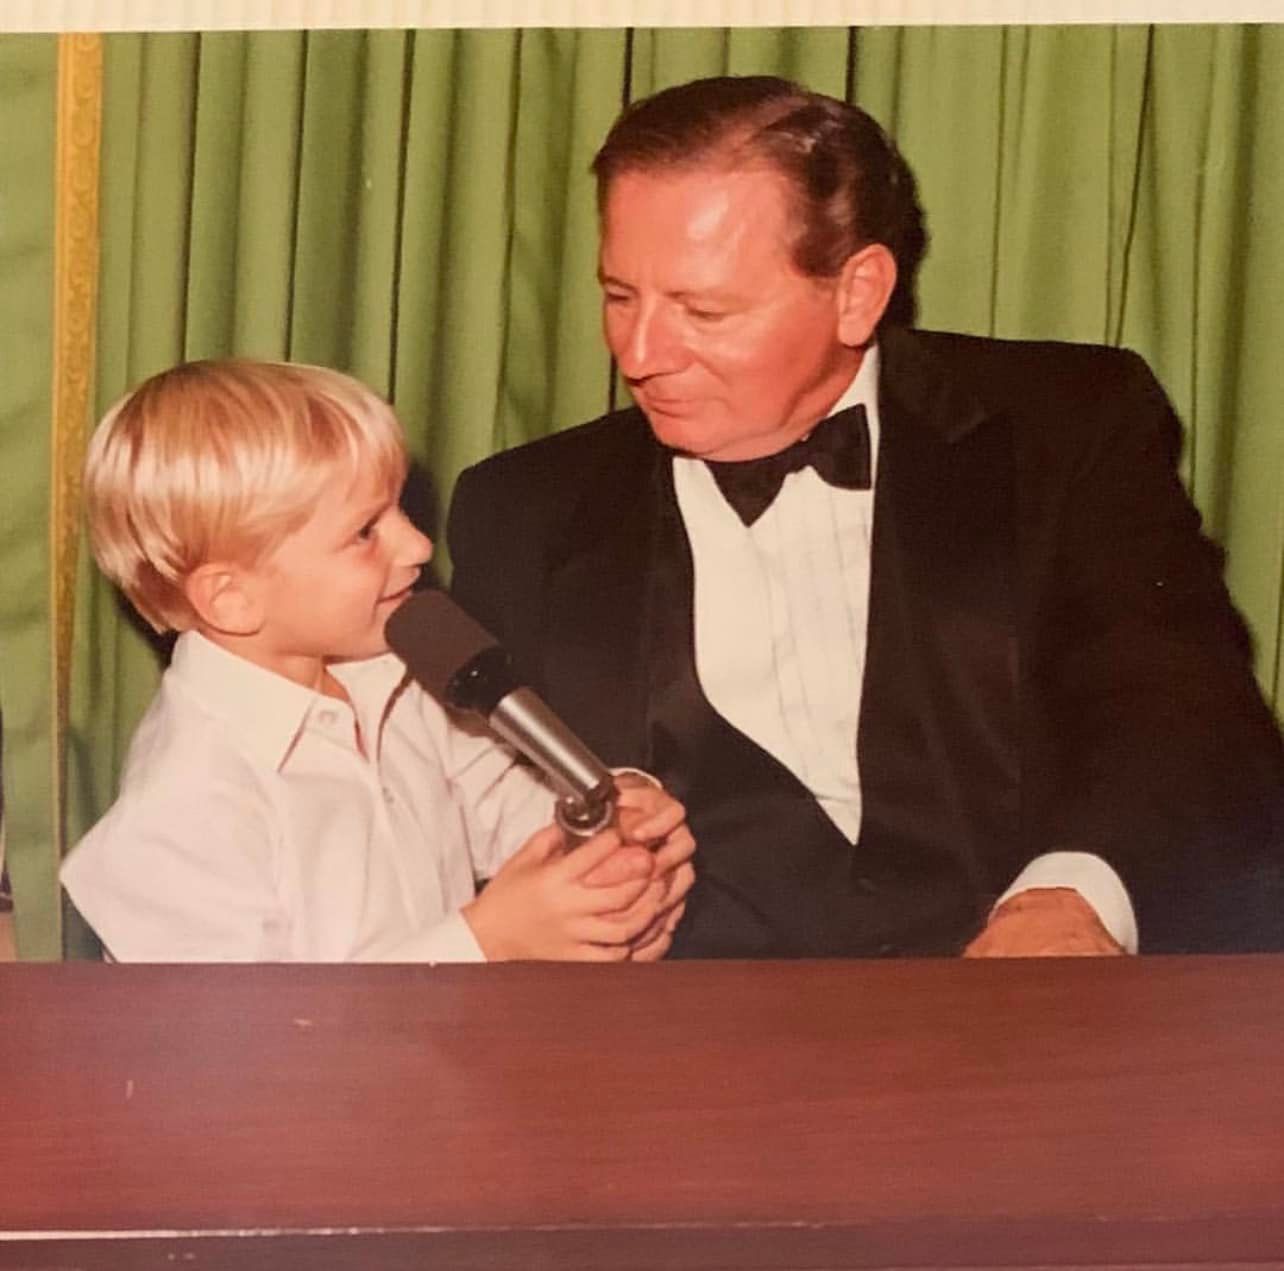 Berg with his grandfather Bert Rose